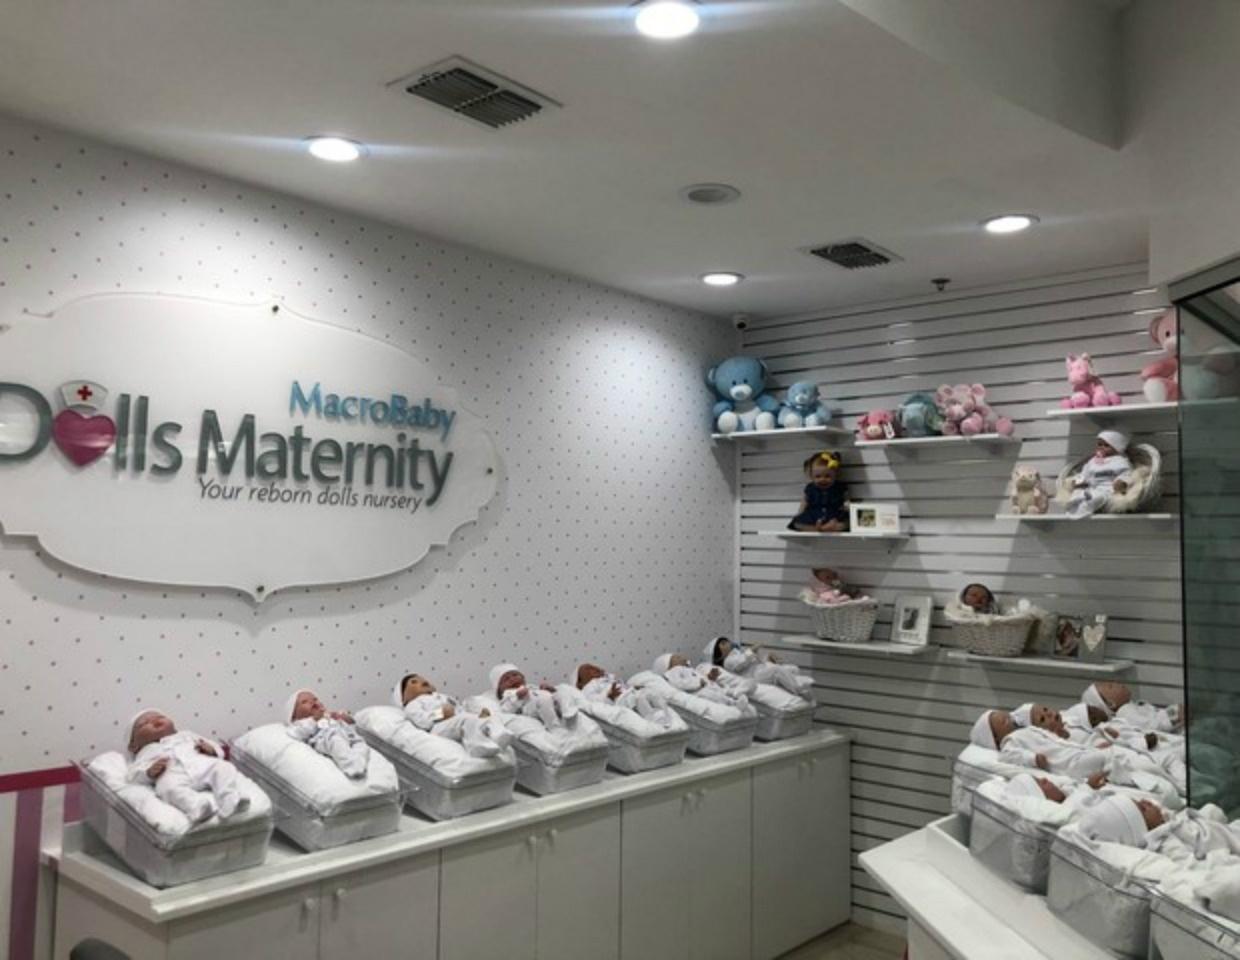 Primeira maternidade de bonecas reborn é inaugurada nos EUA - 20